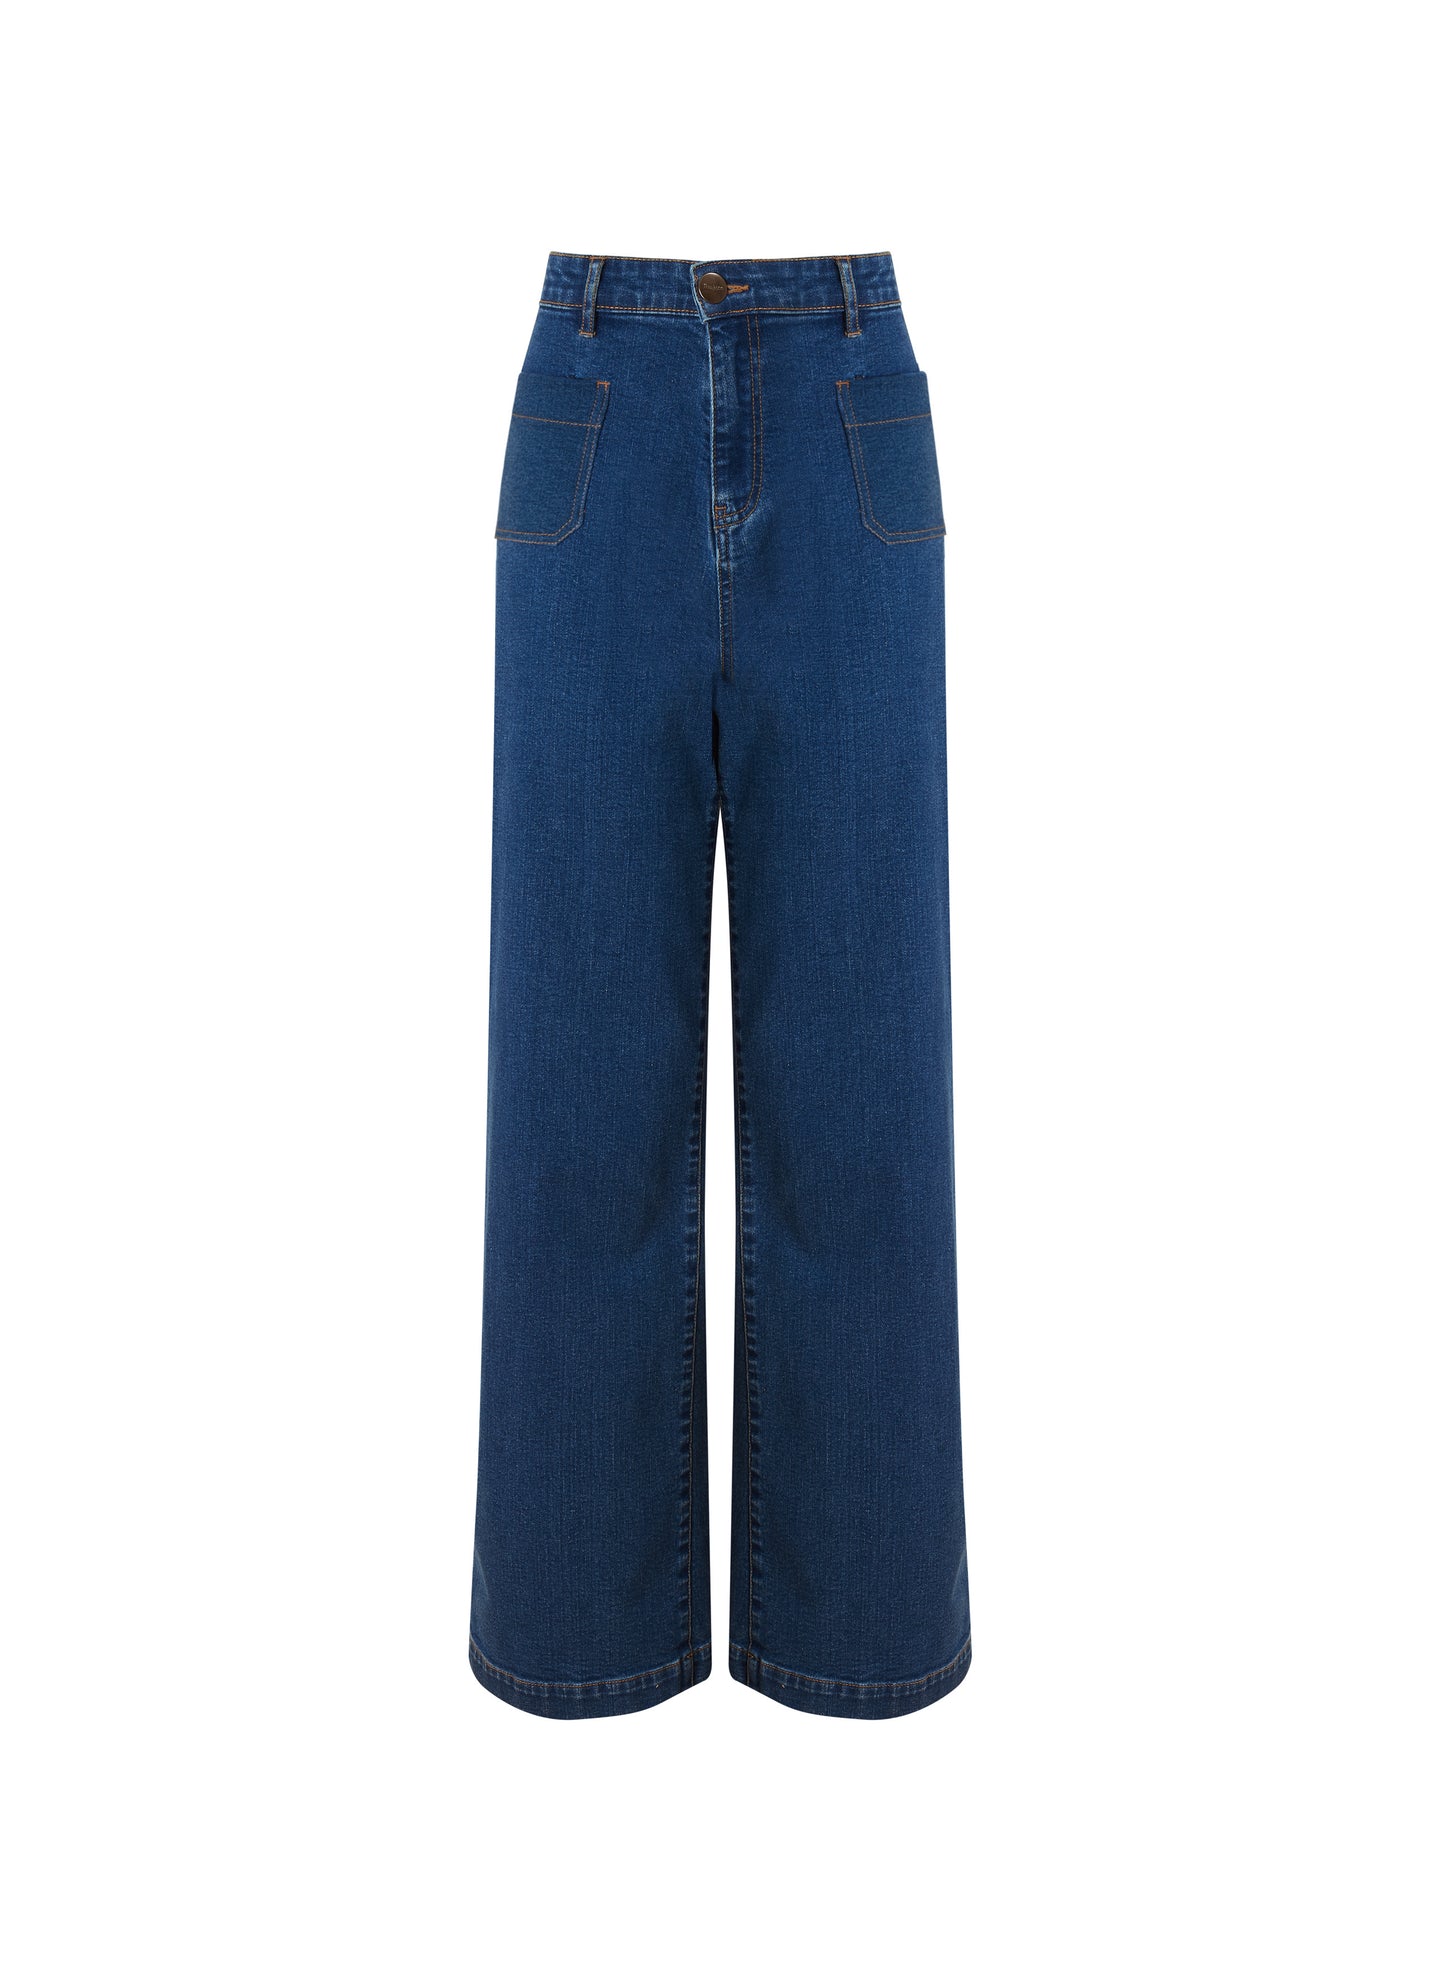 Lou Organic Cotton Jeans